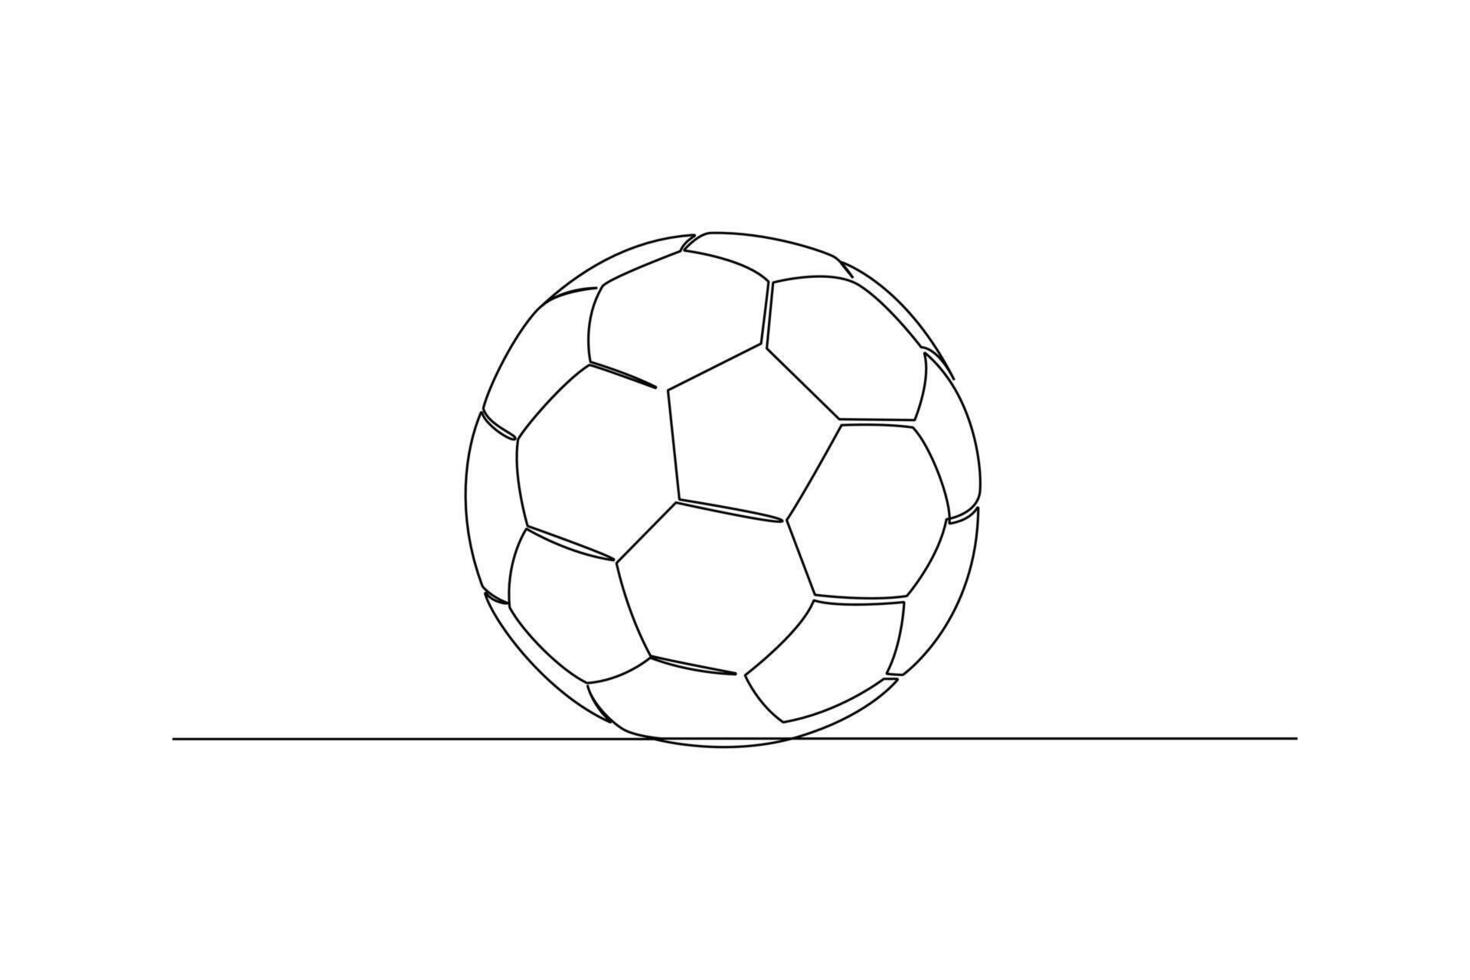 einer kontinuierlich Linie Zeichnung von Sport Konzept. Gekritzel Vektor Illustration im einfach linear Stil.